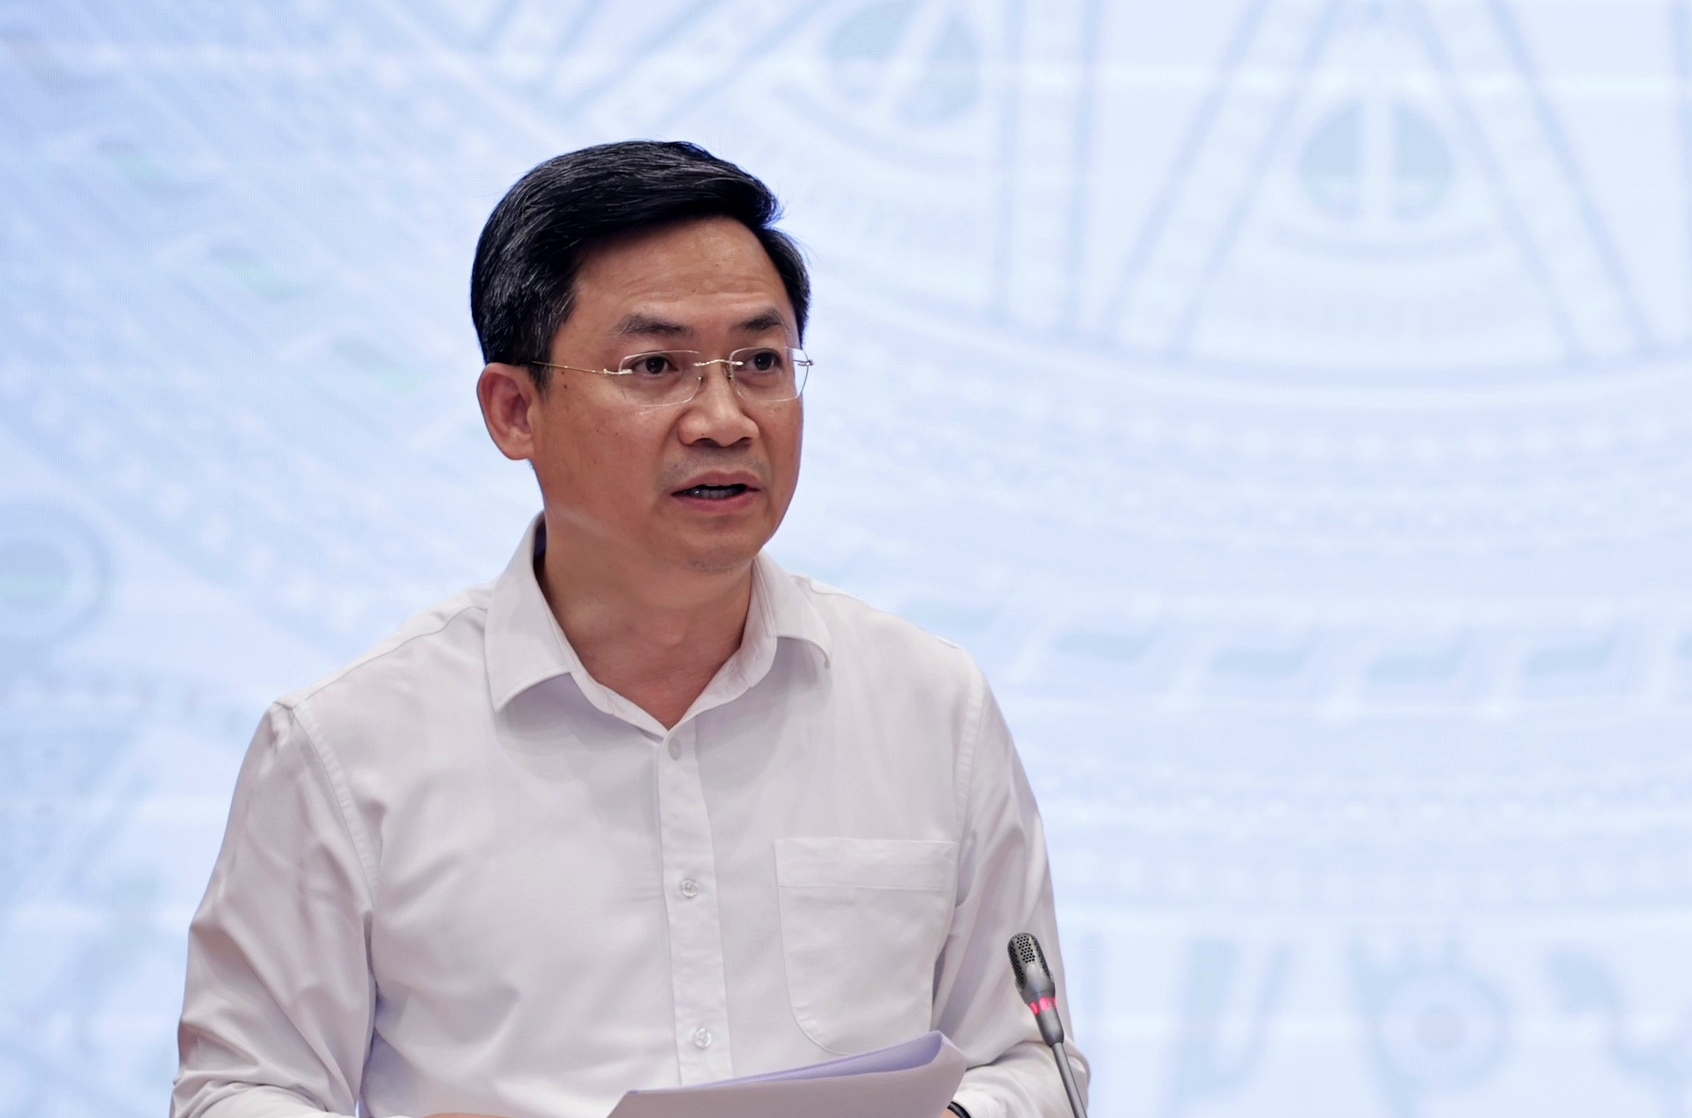 Thị trường - Hà Nội xin lùi hạn báo cáo Thủ tướng vụ 3 mỏ cát trúng đấu giá cao bất thường, lý do là gì?